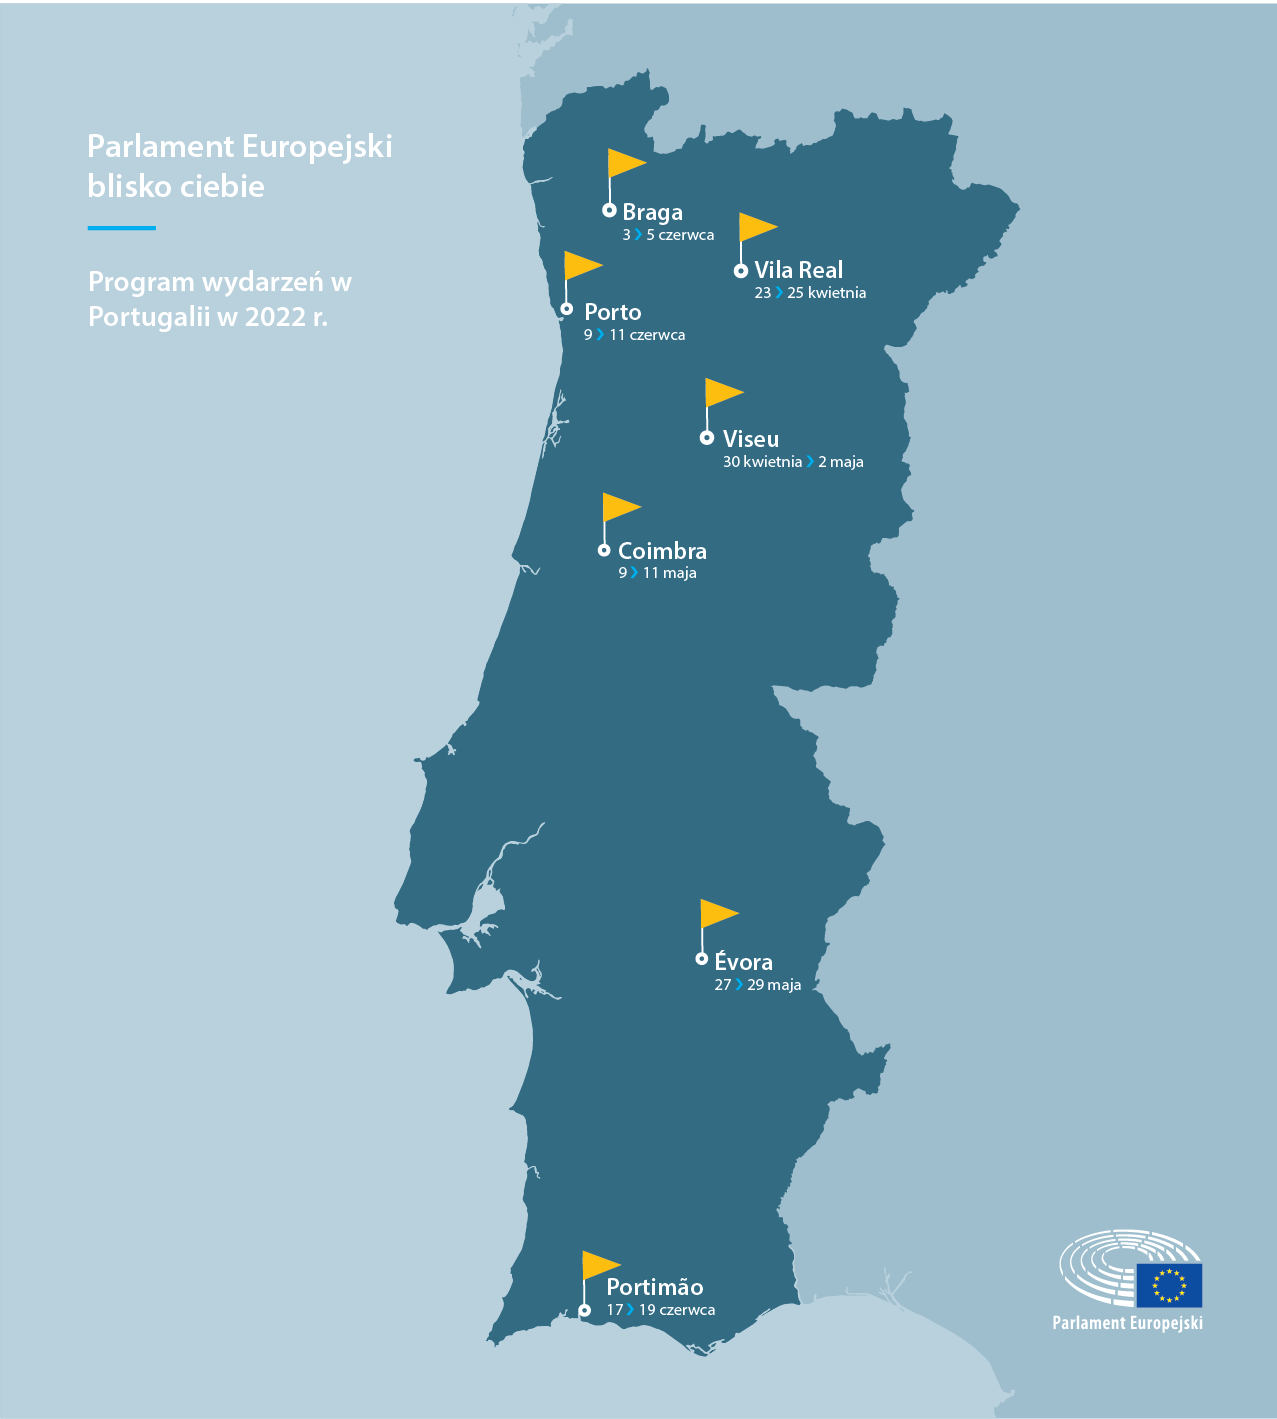 Program wydarzeń w Portugalii w 2022 r.